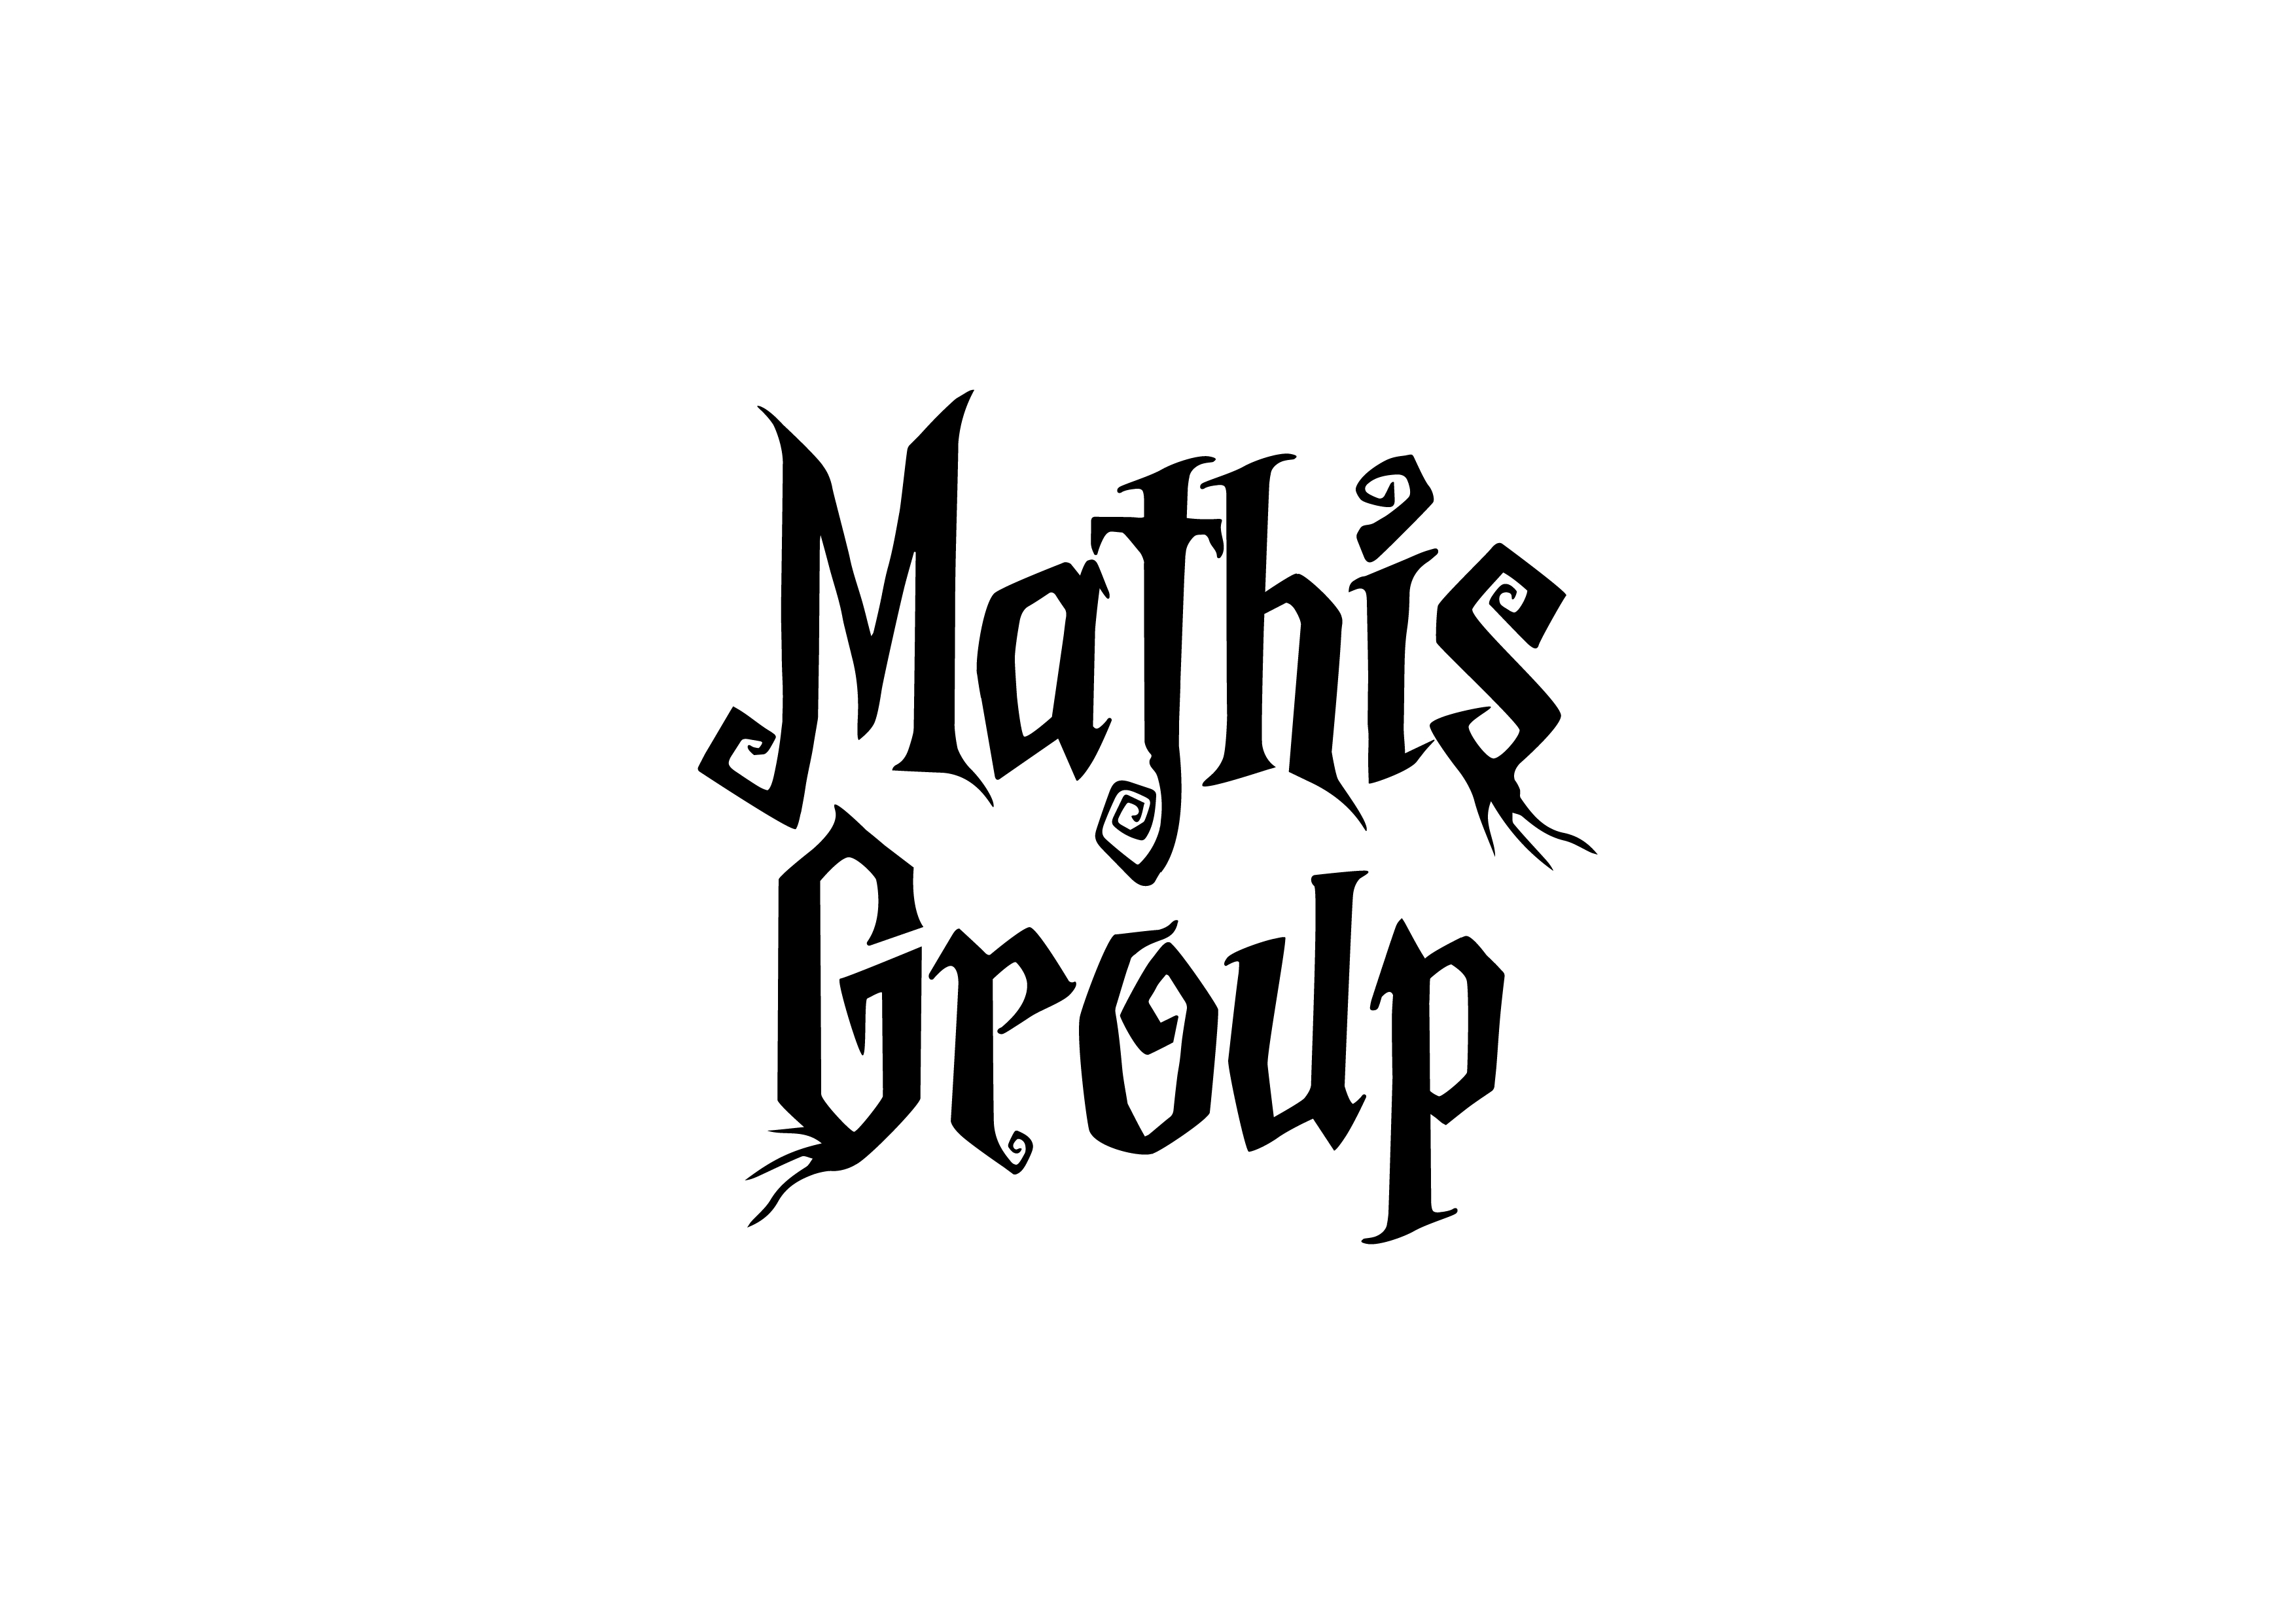 2022_03 MATHIS GROUP_LOGO 2_v0.jpg (326 KB)